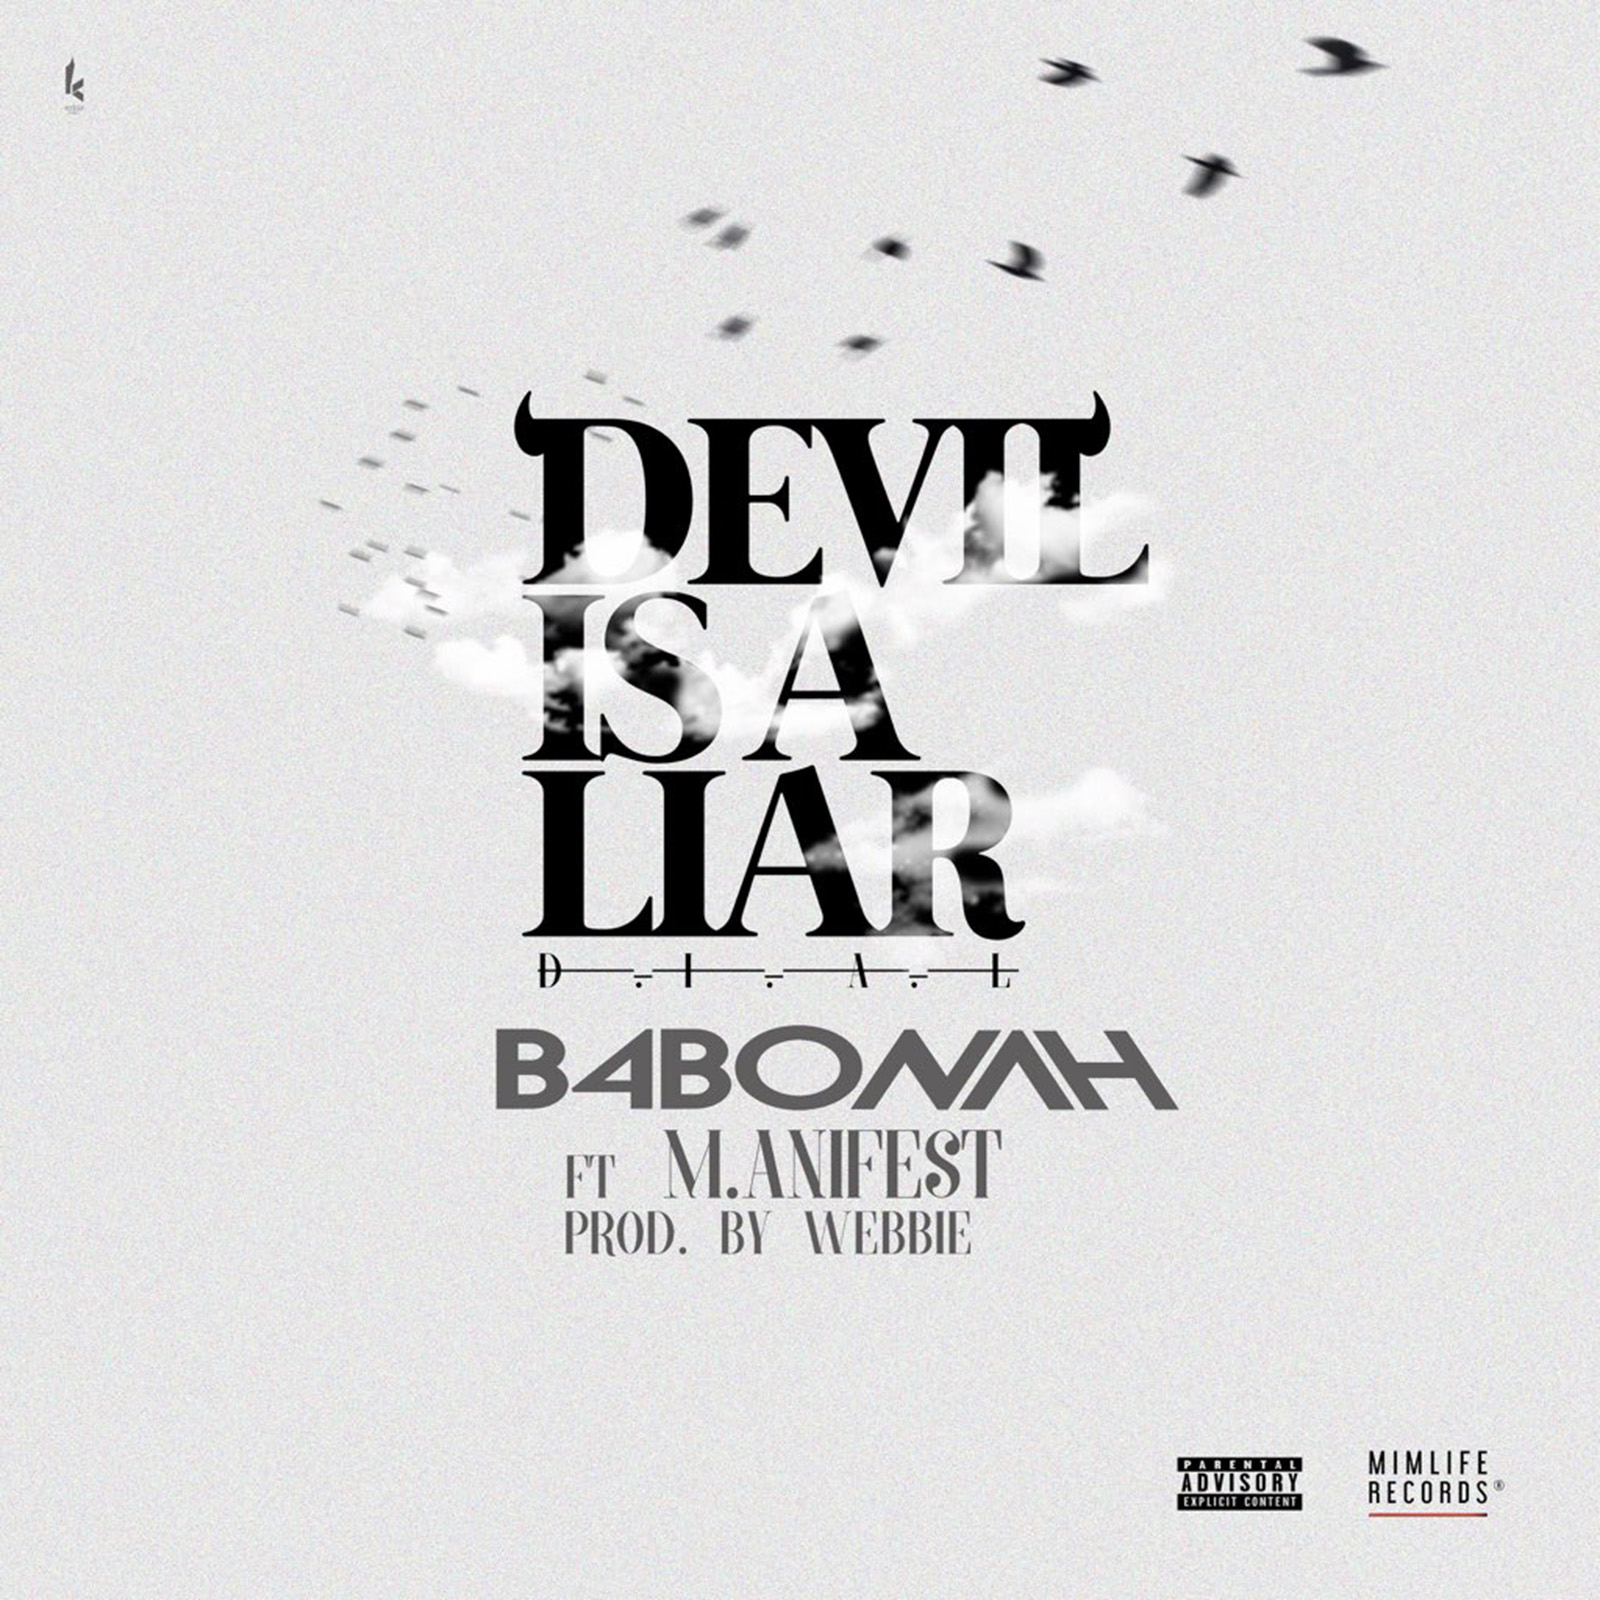 Devil Is A Liar Remix by B4Bonah feat. M.anifest